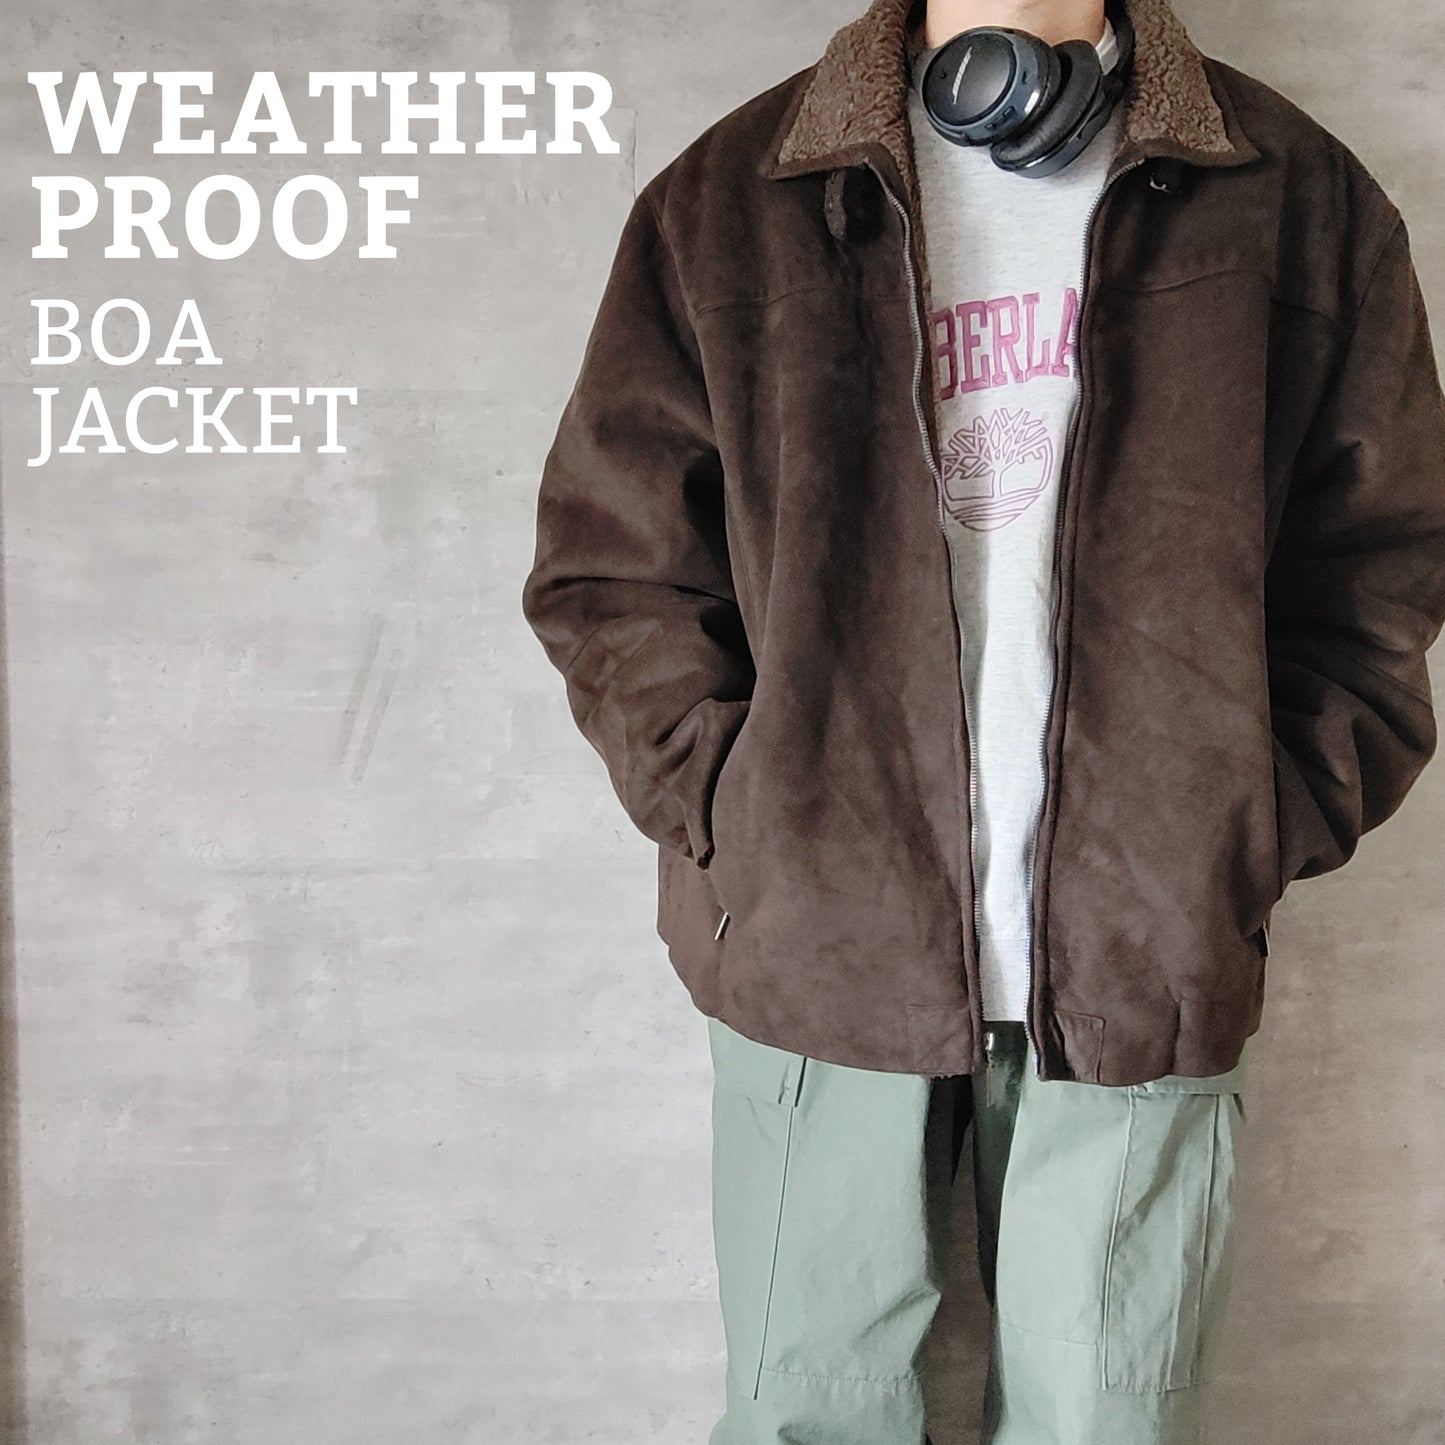 [weatherproof] boa jacket